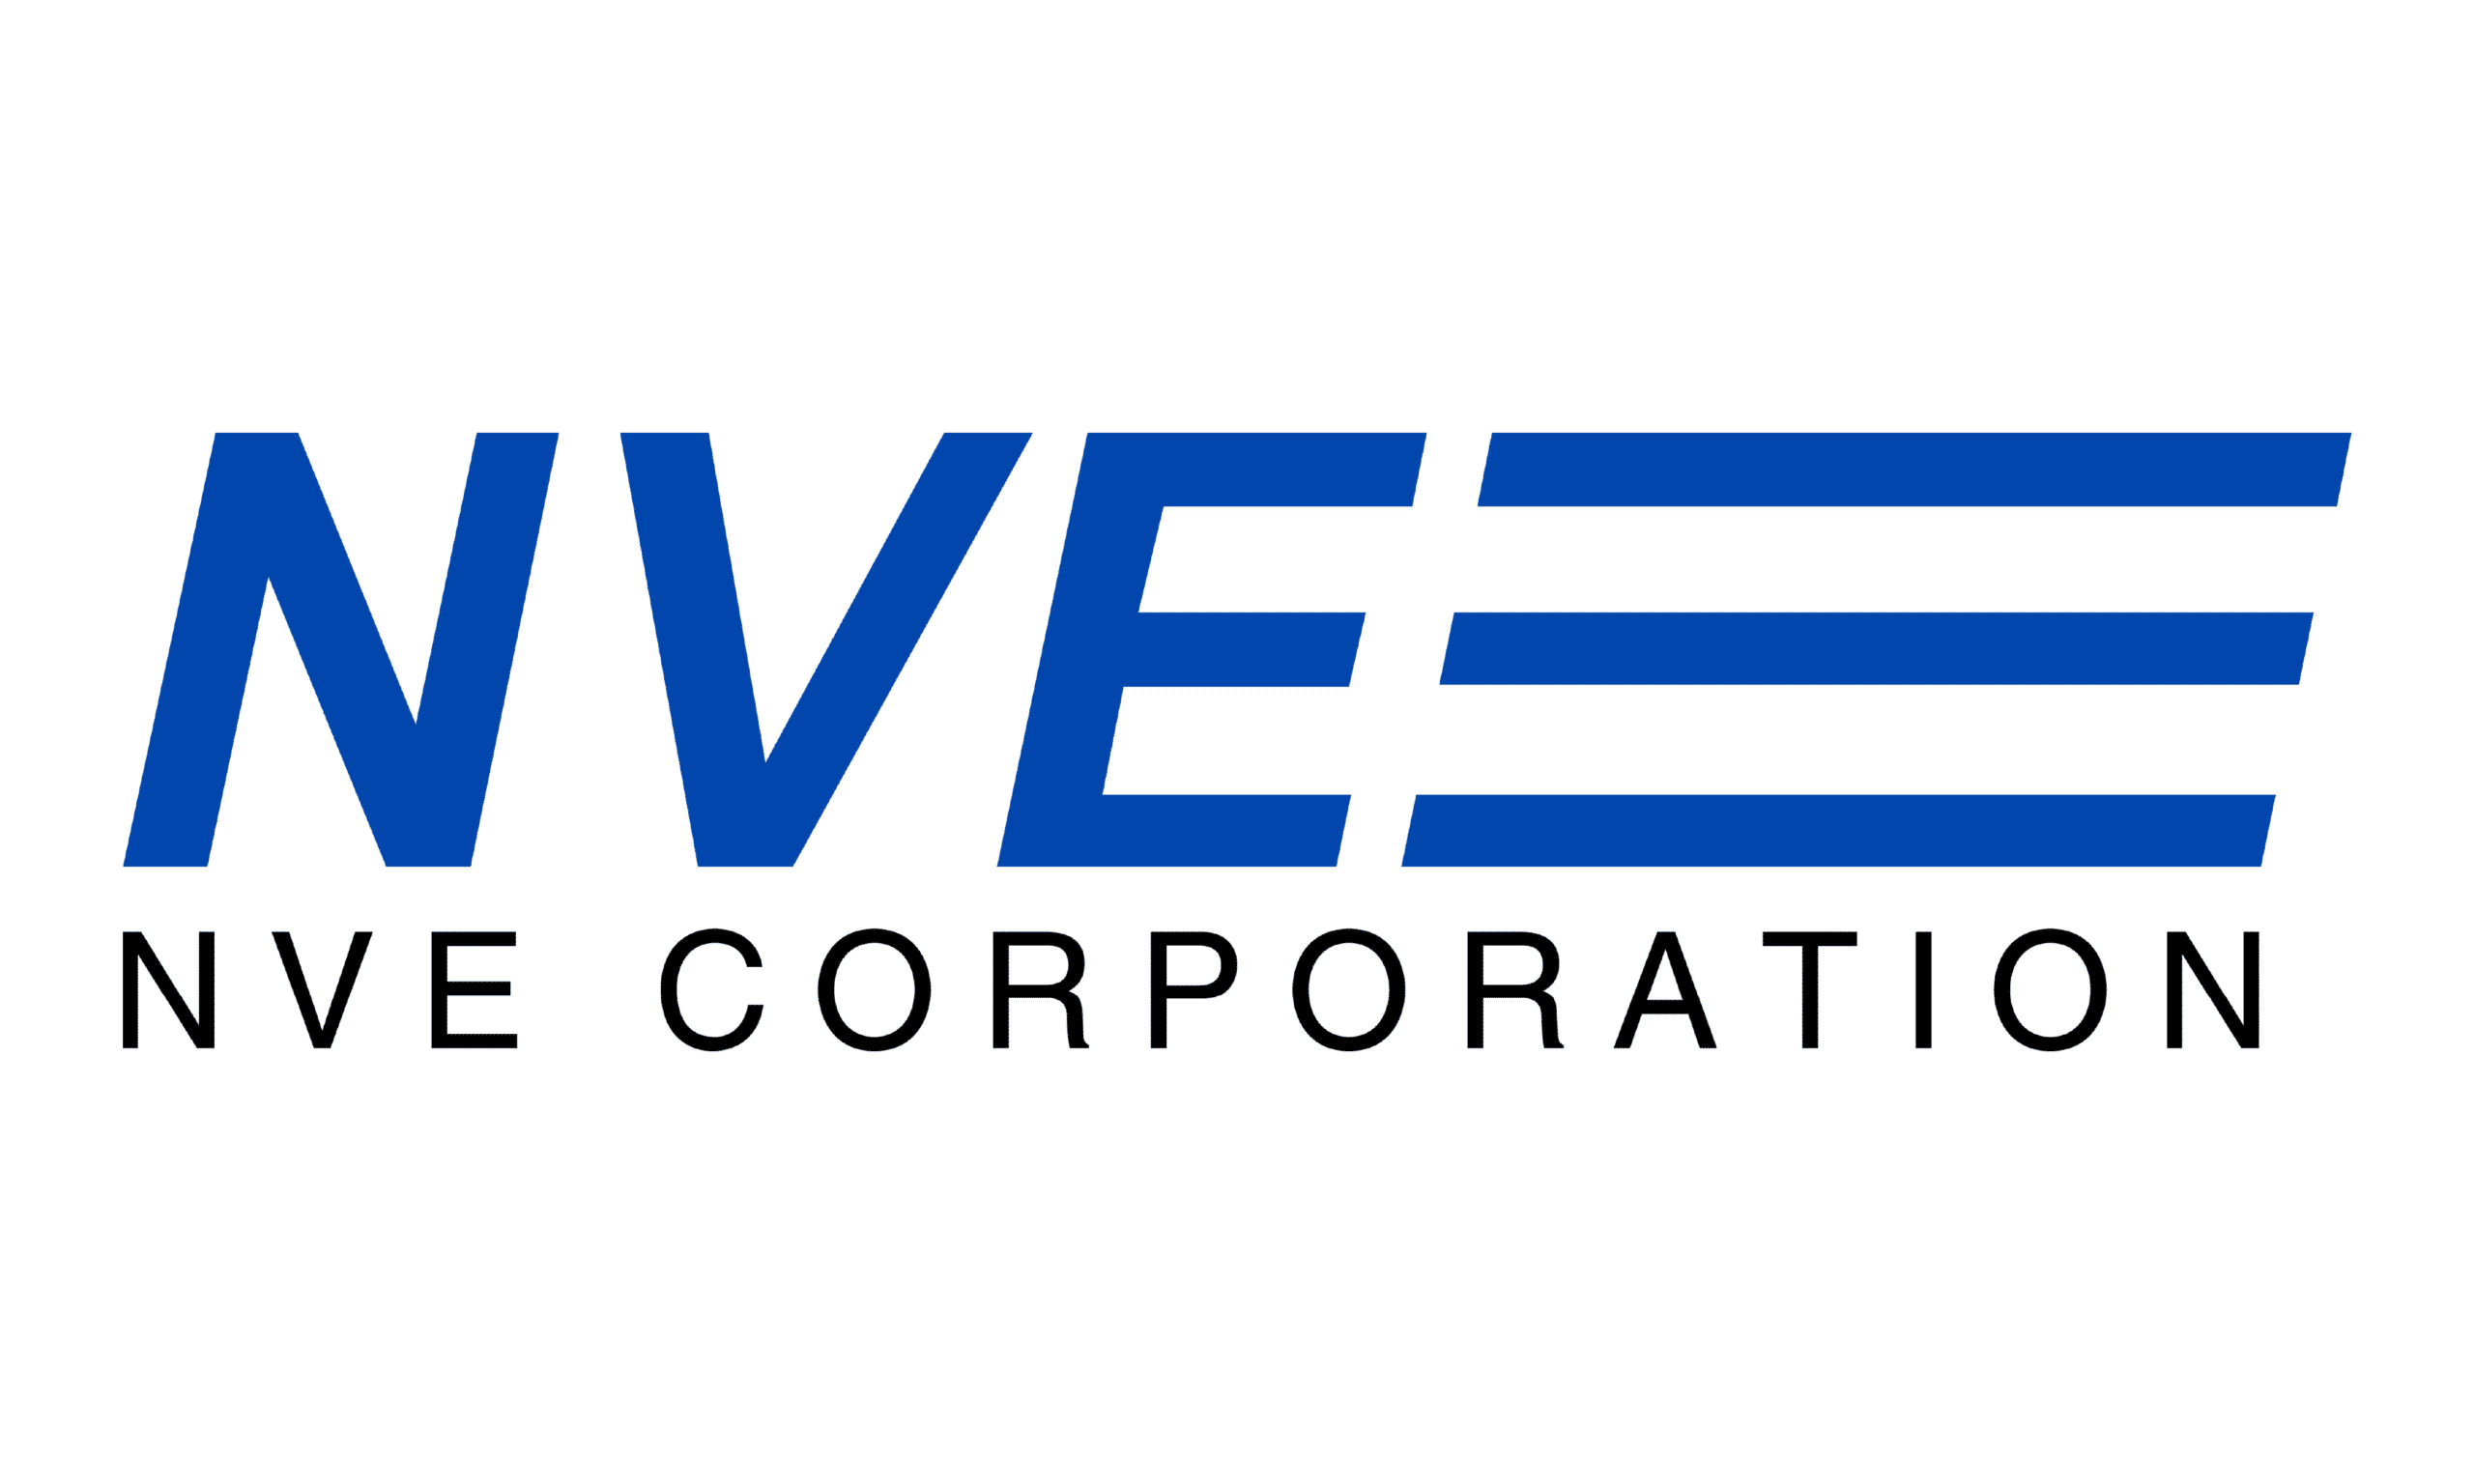 NVE Corporation Company Logo 1000px by 600px